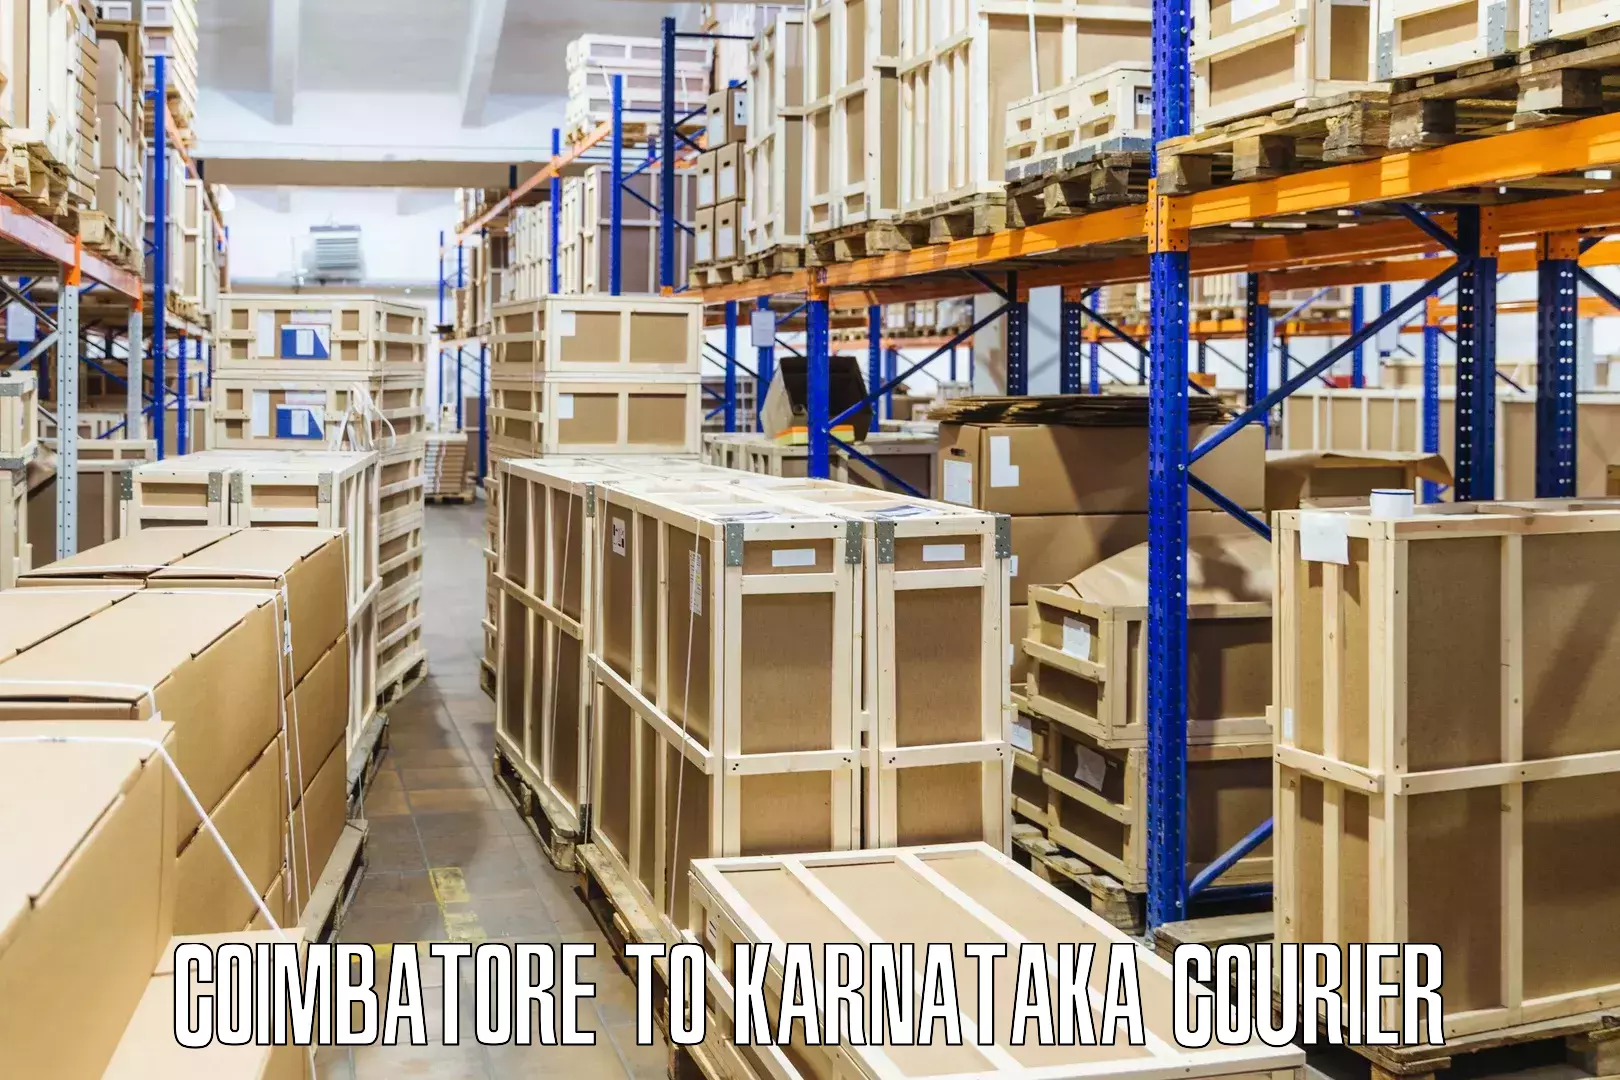 Business shipping needs Coimbatore to Karnataka